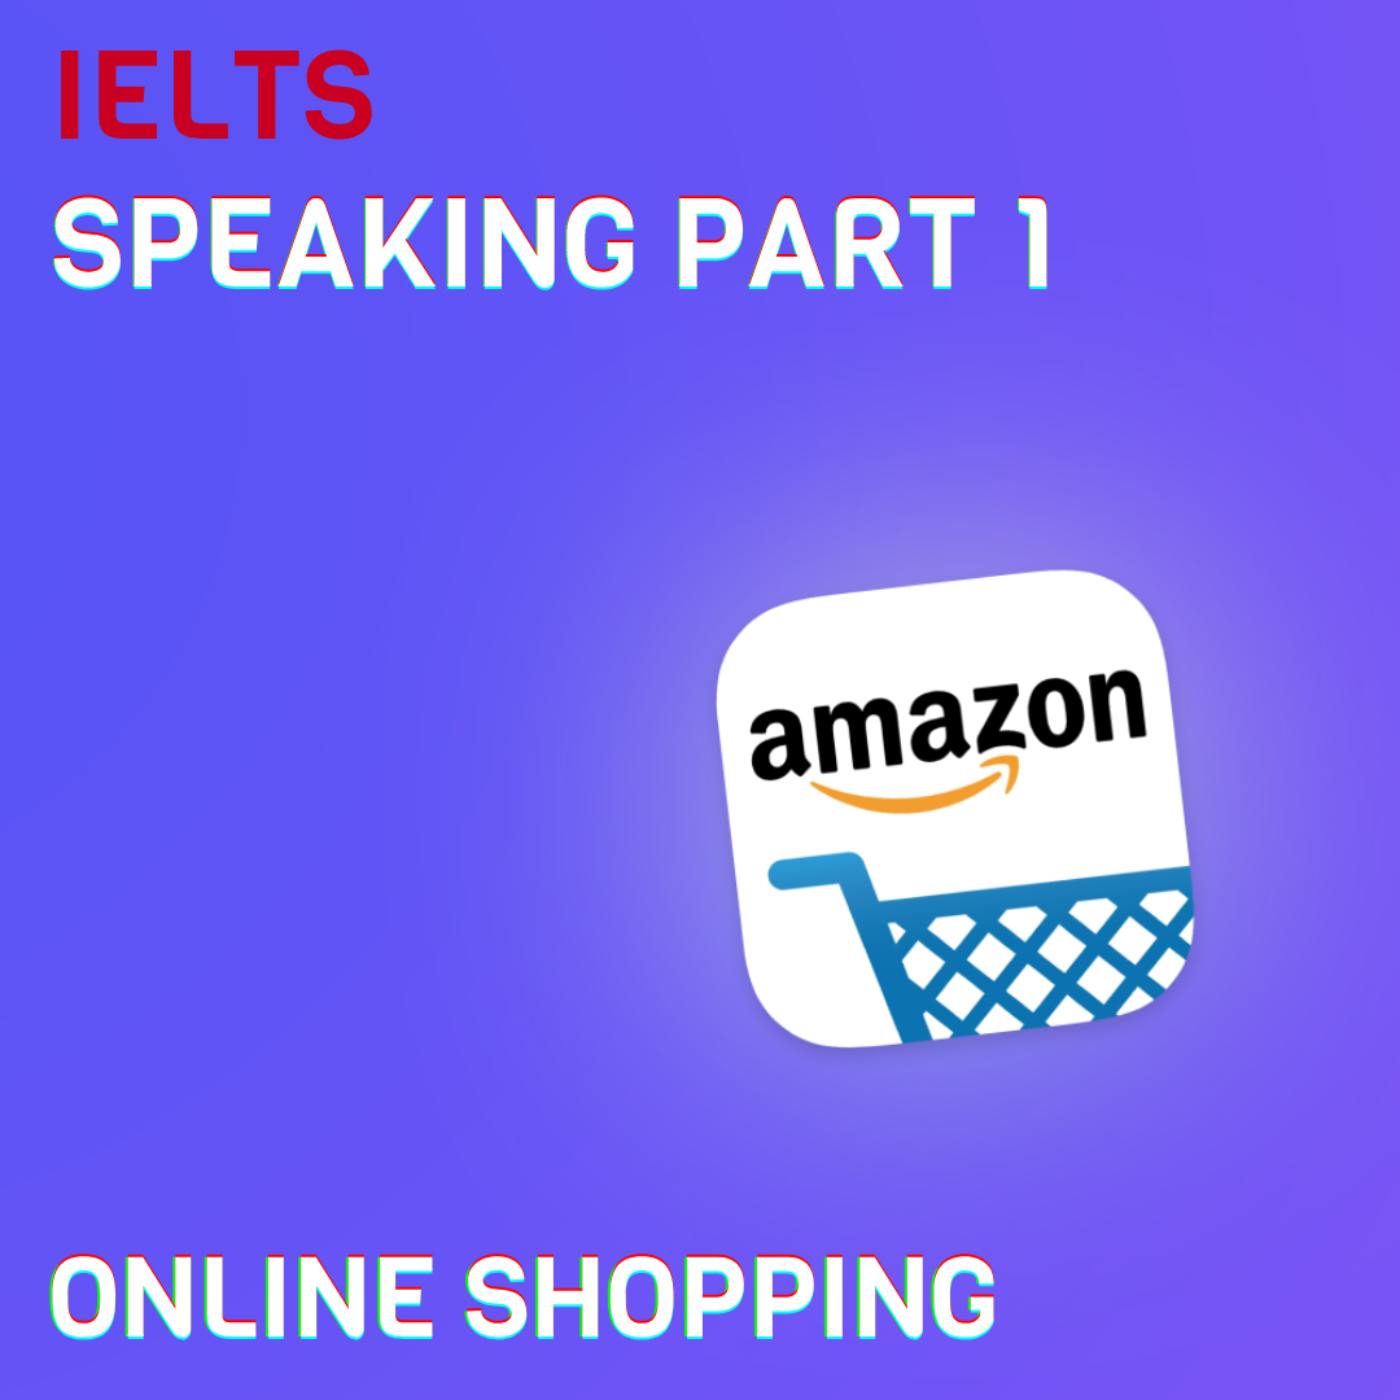 🛒 Online shopping (S10E18) + Transcript